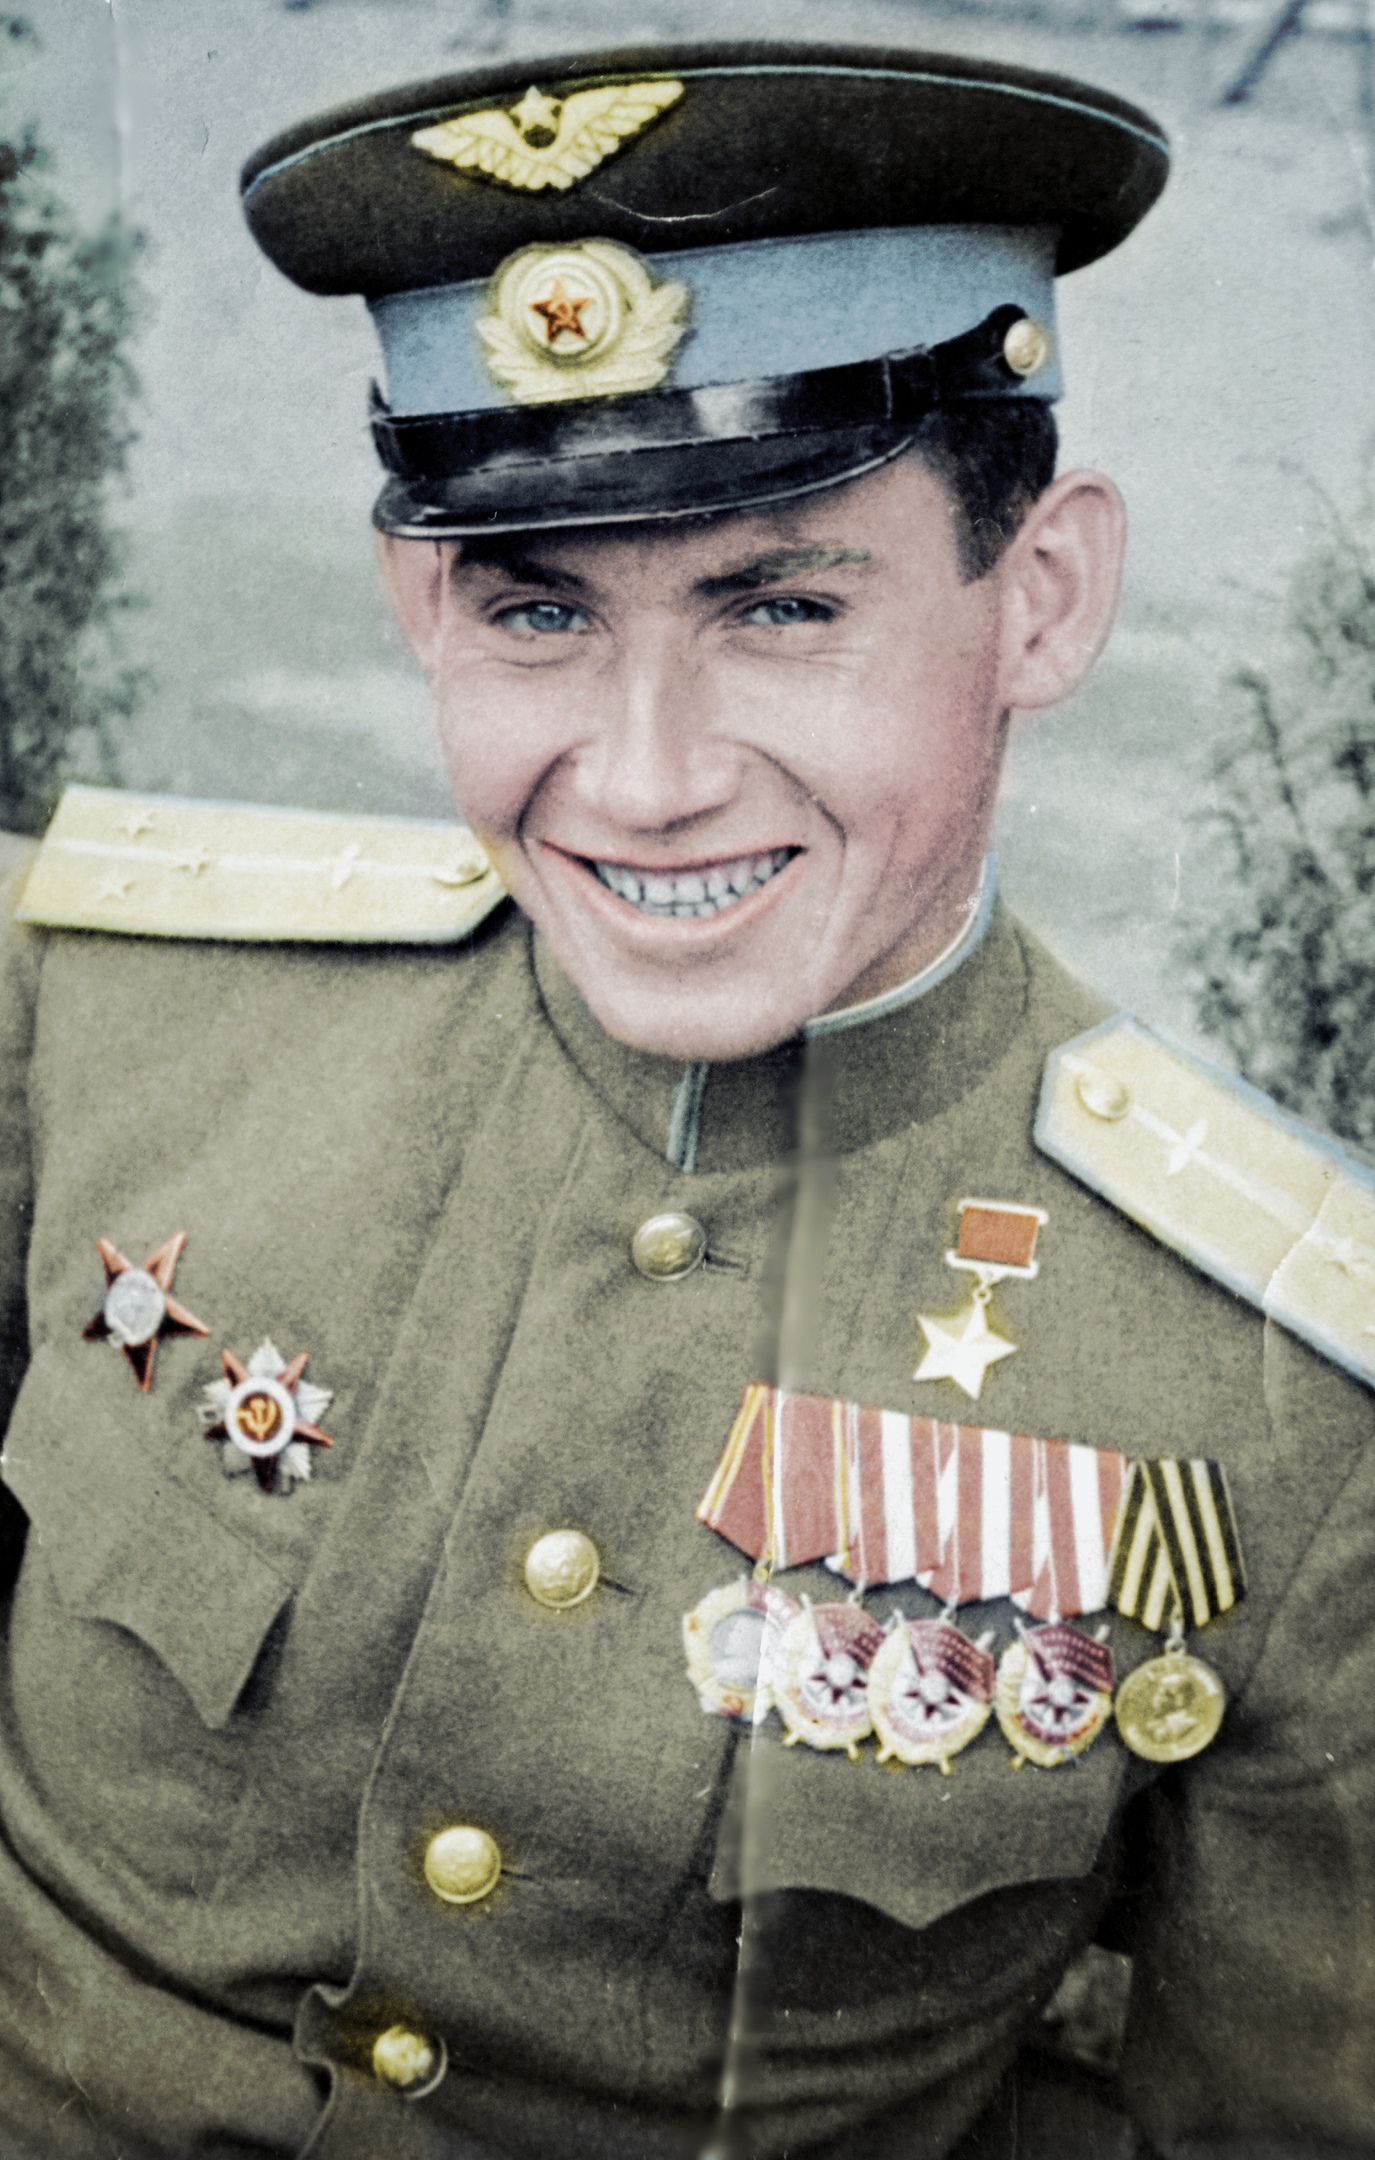 Герои советского союза великой отечественной войны фото